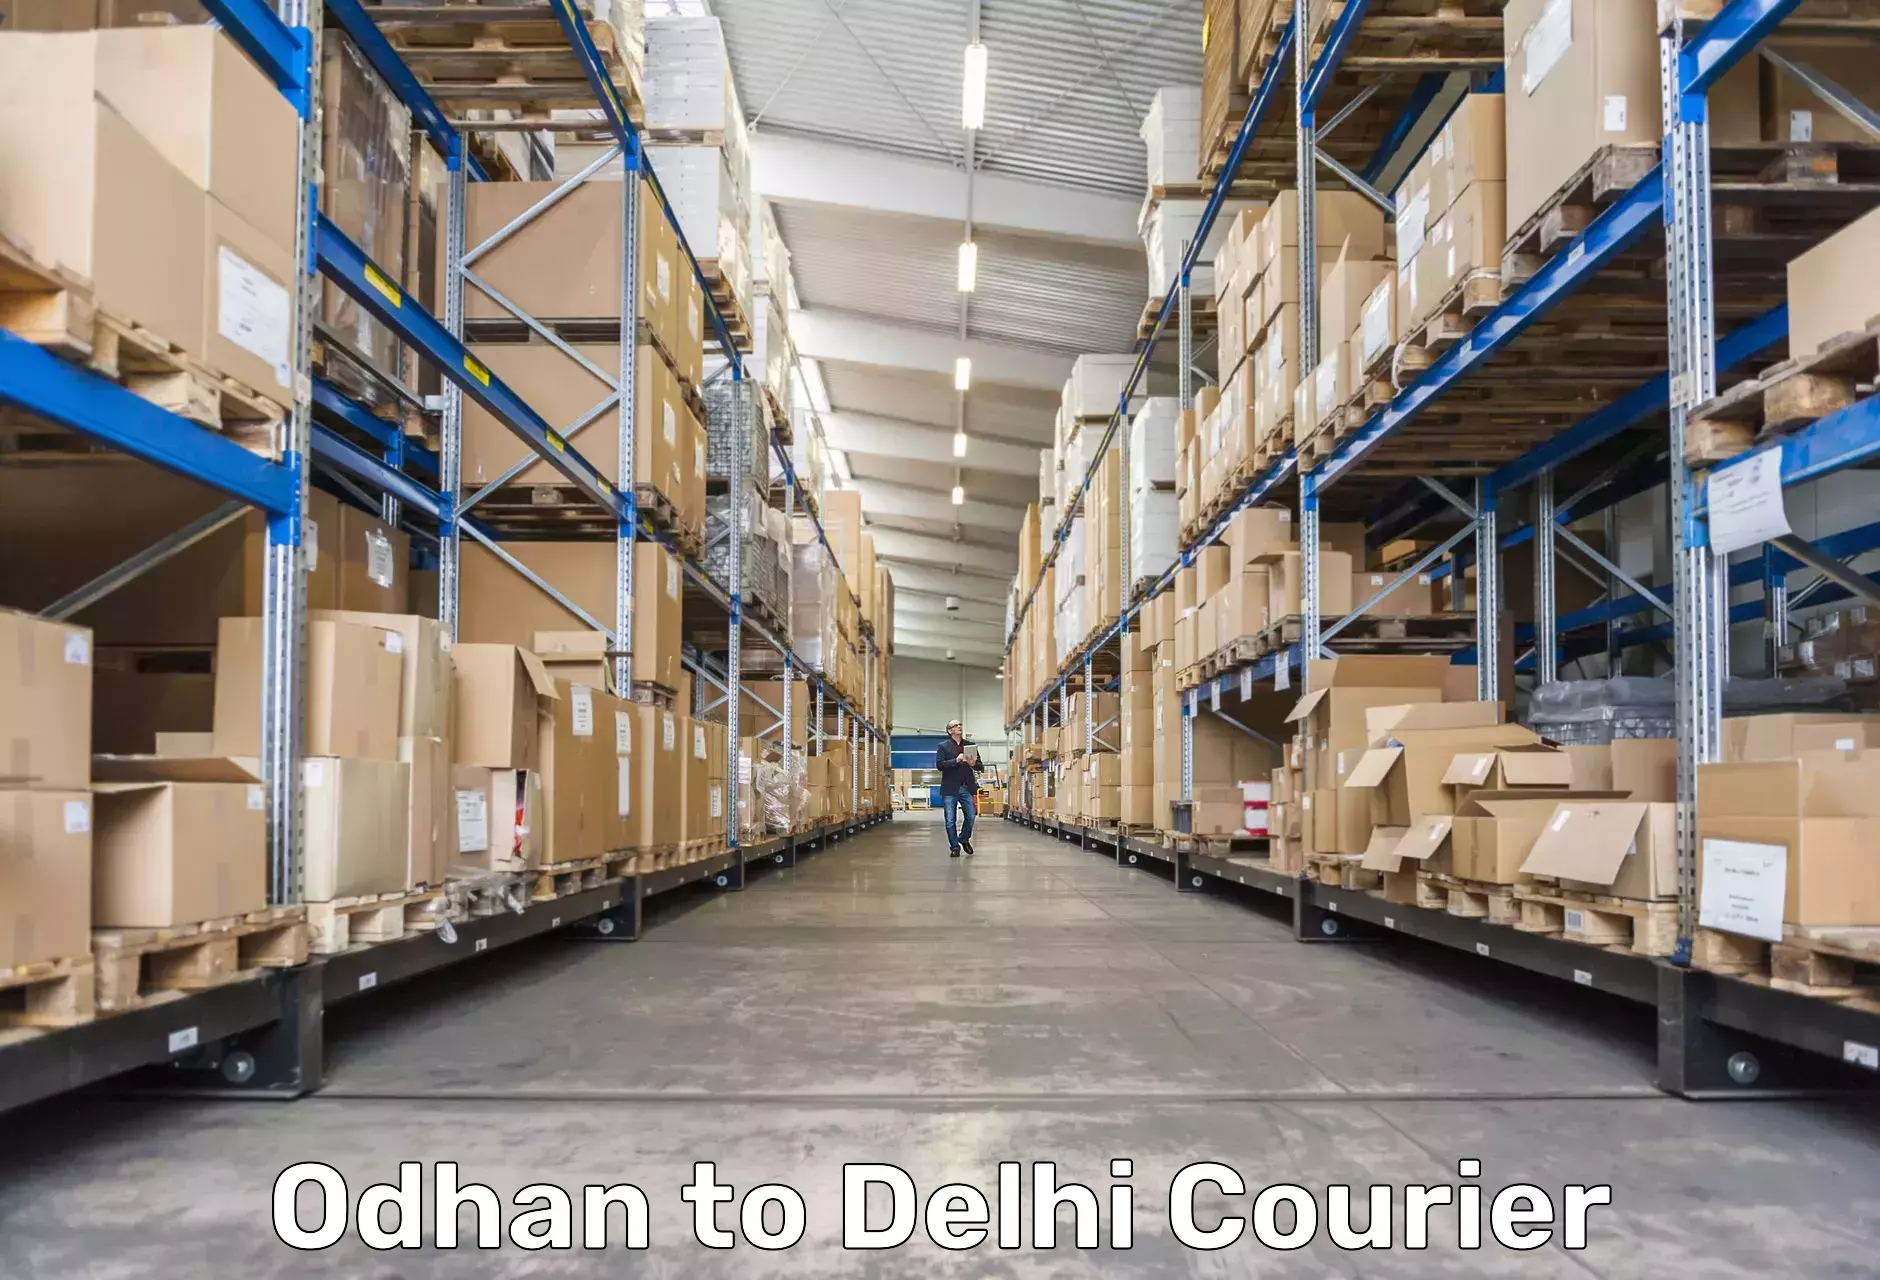 Express logistics service Odhan to Delhi